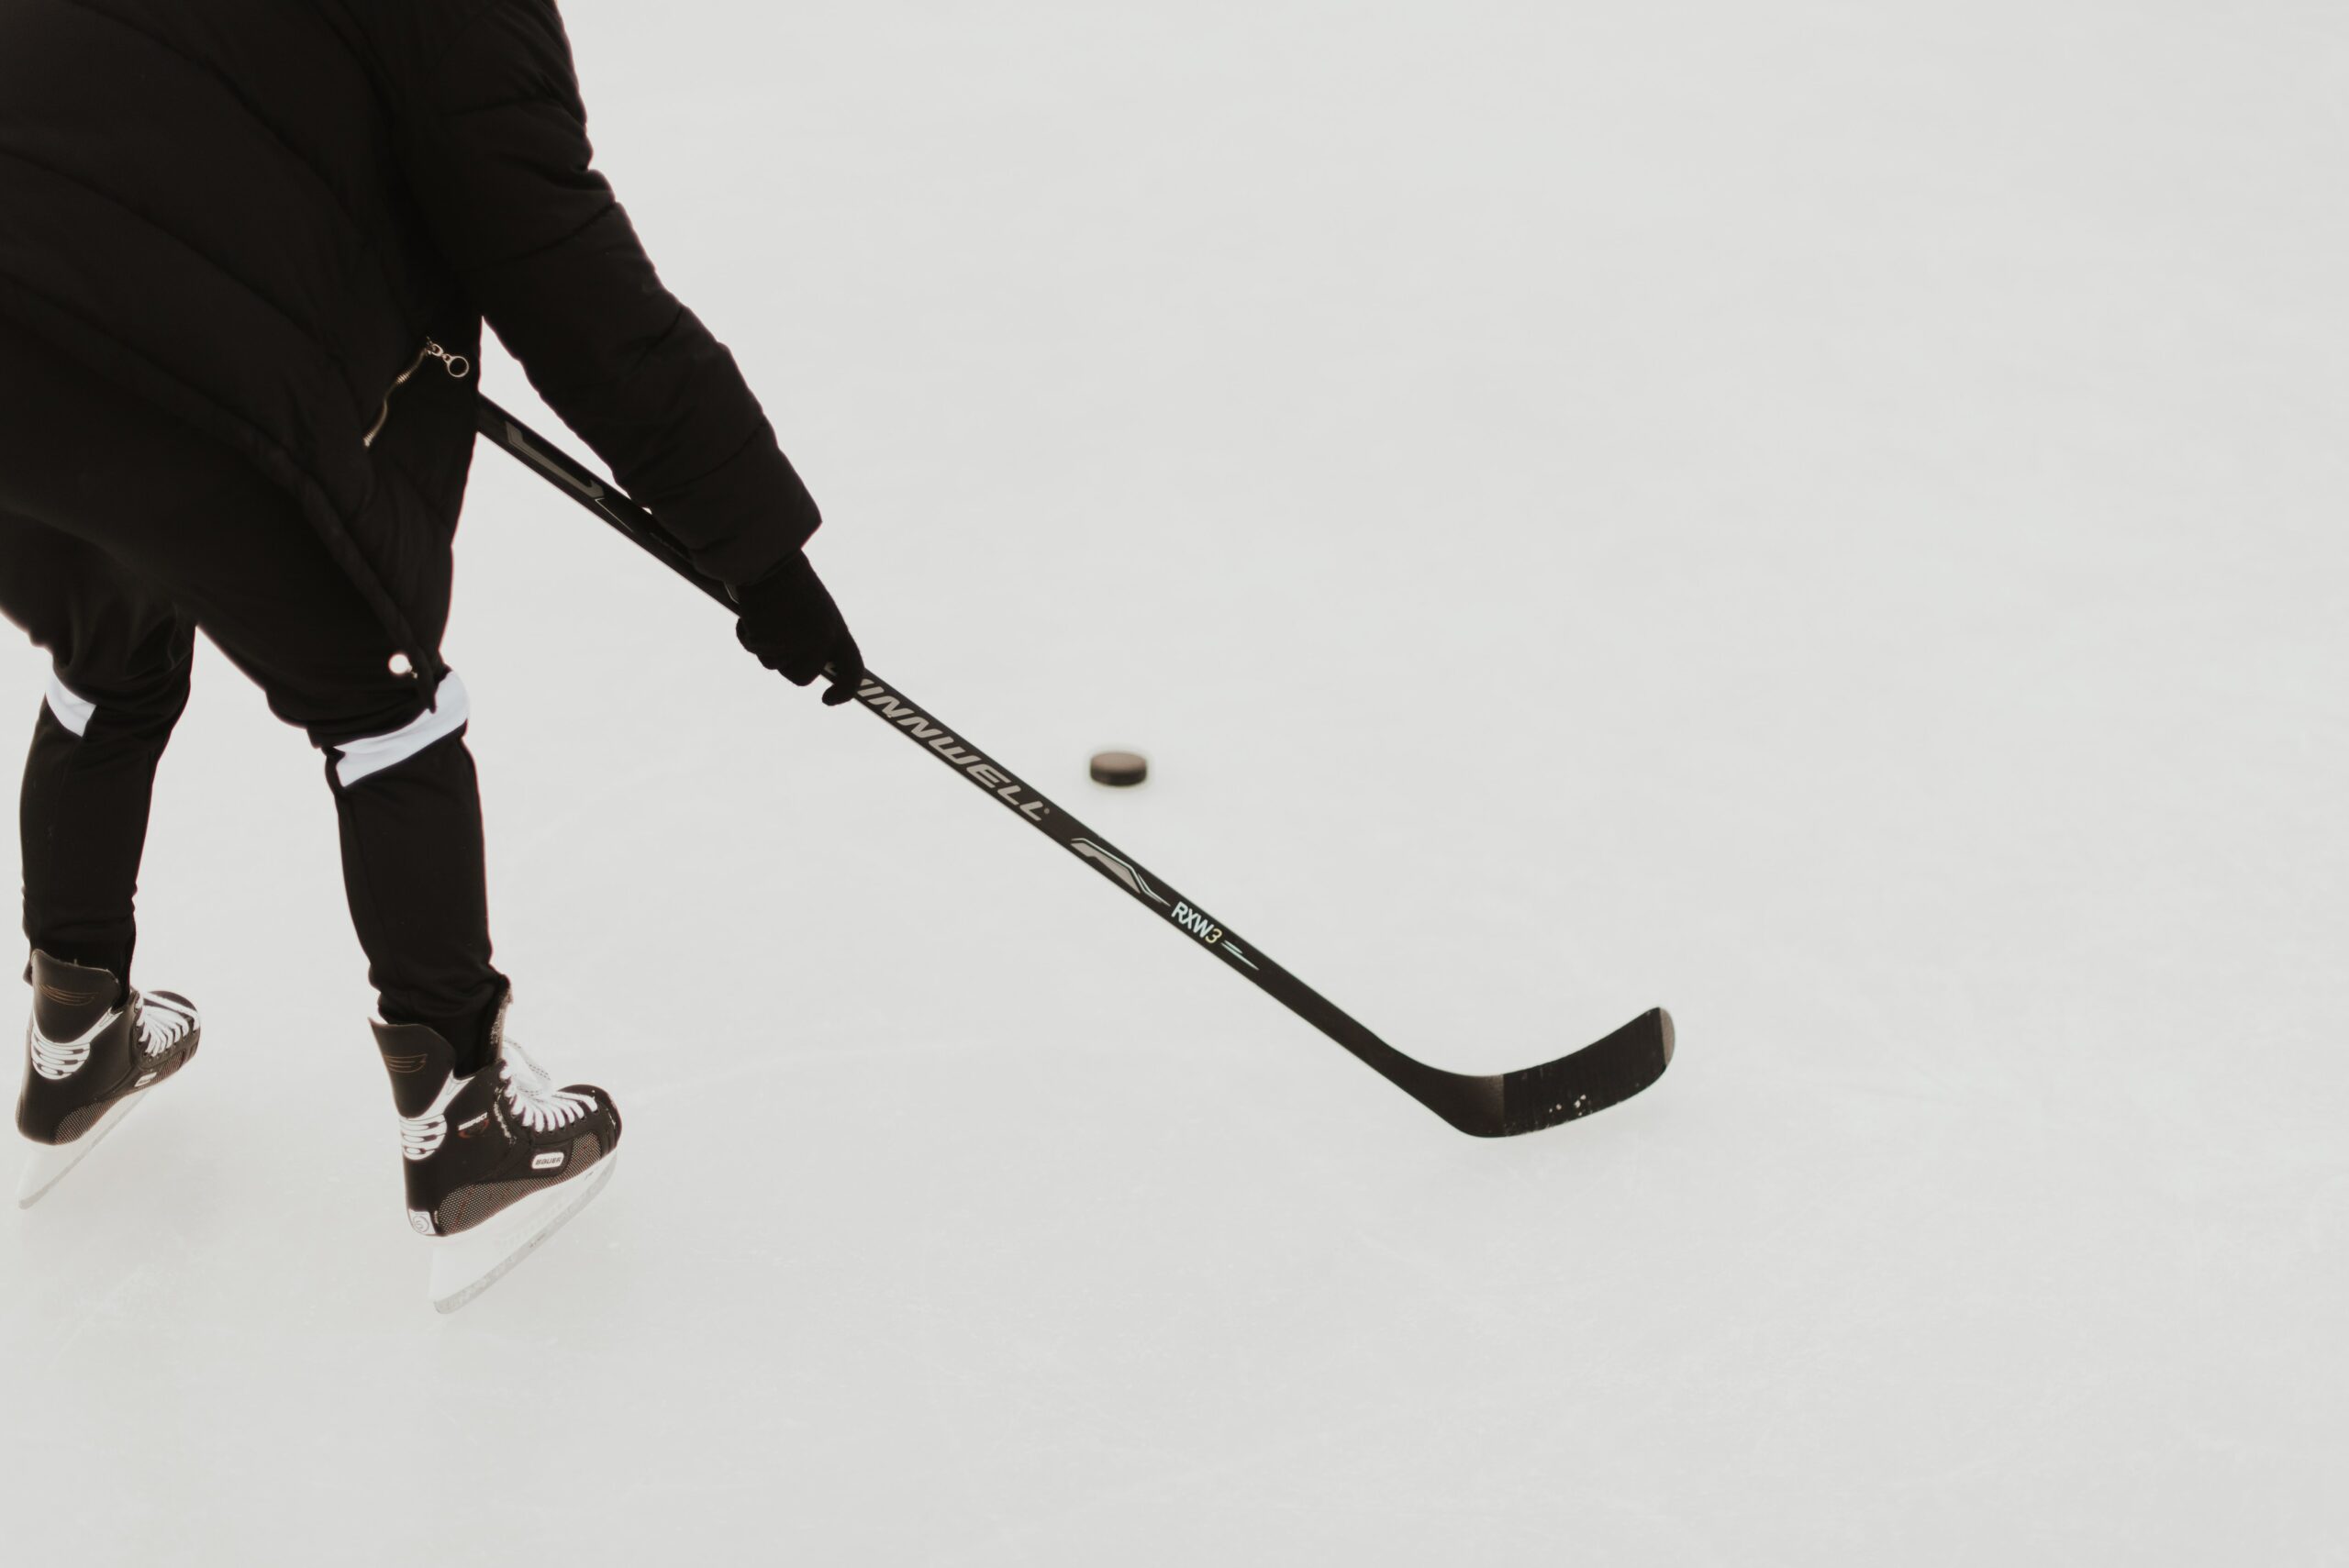 Ishockey kølle tips